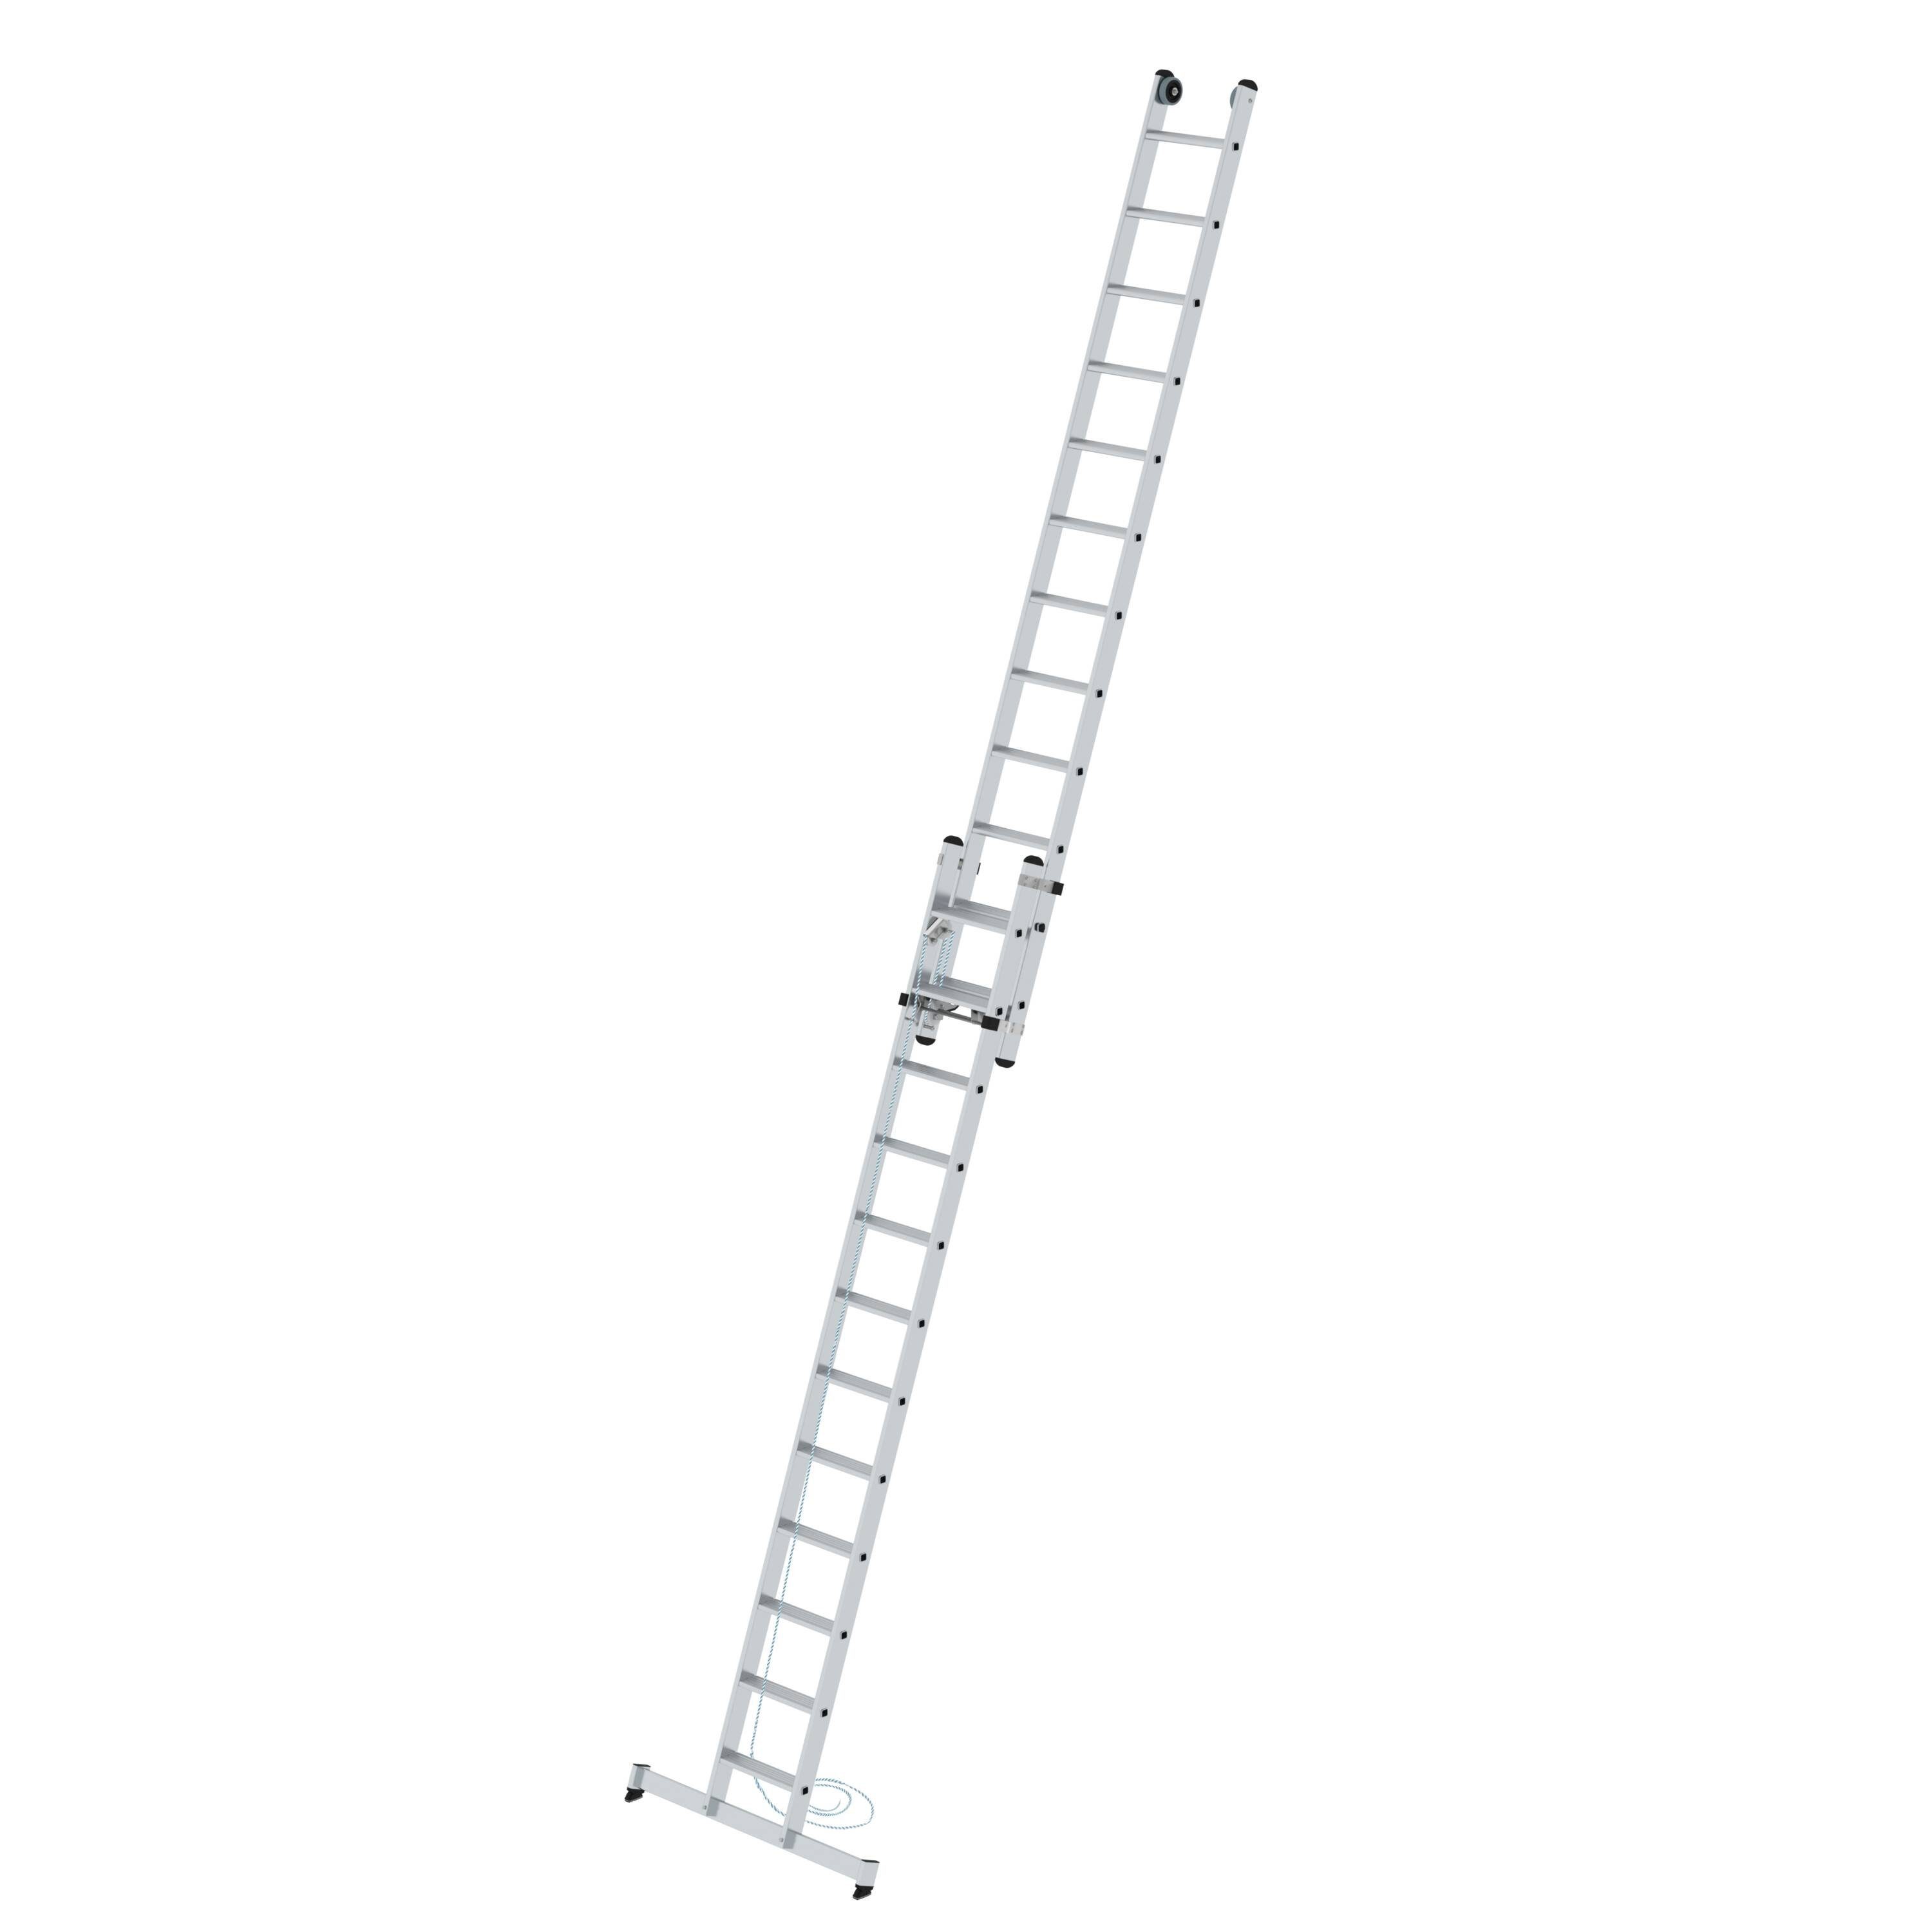 PROREGAL® Schiebeleiter Stufen-Seilzugleiter 2-teilig mit nivello® Traverse 2x12 Stufen